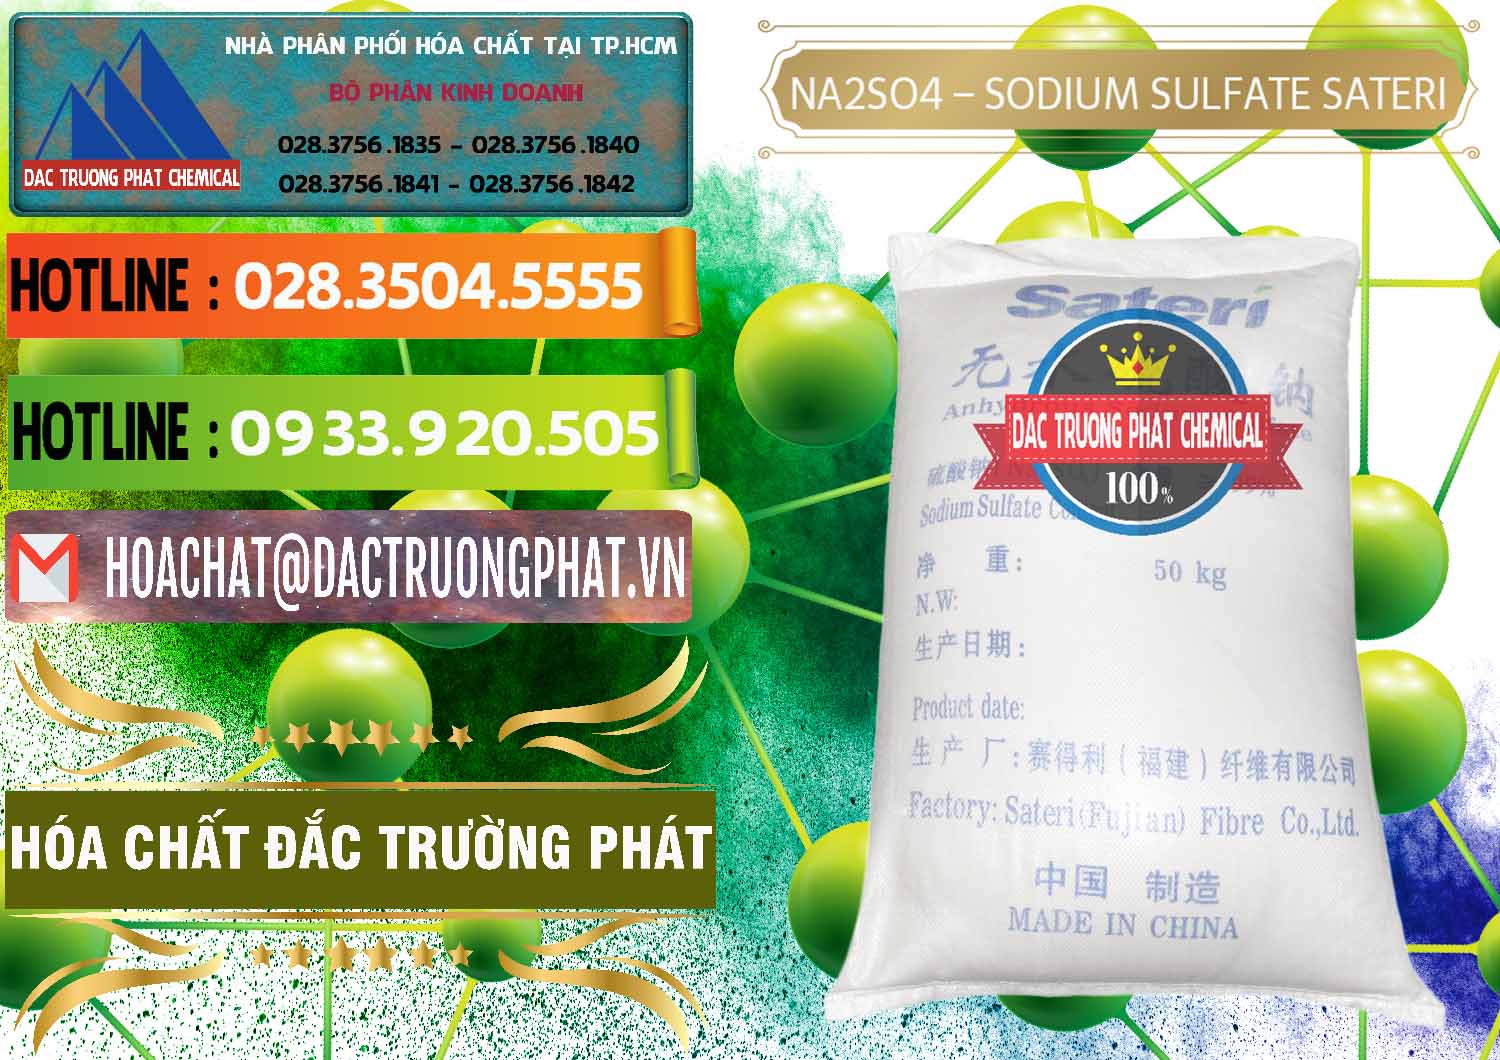 Cty chuyên bán và cung cấp Sodium Sulphate - Muối Sunfat Na2SO4 Sateri Trung Quốc China - 0100 - Công ty chuyên nhập khẩu & cung cấp hóa chất tại TP.HCM - cungcaphoachat.com.vn